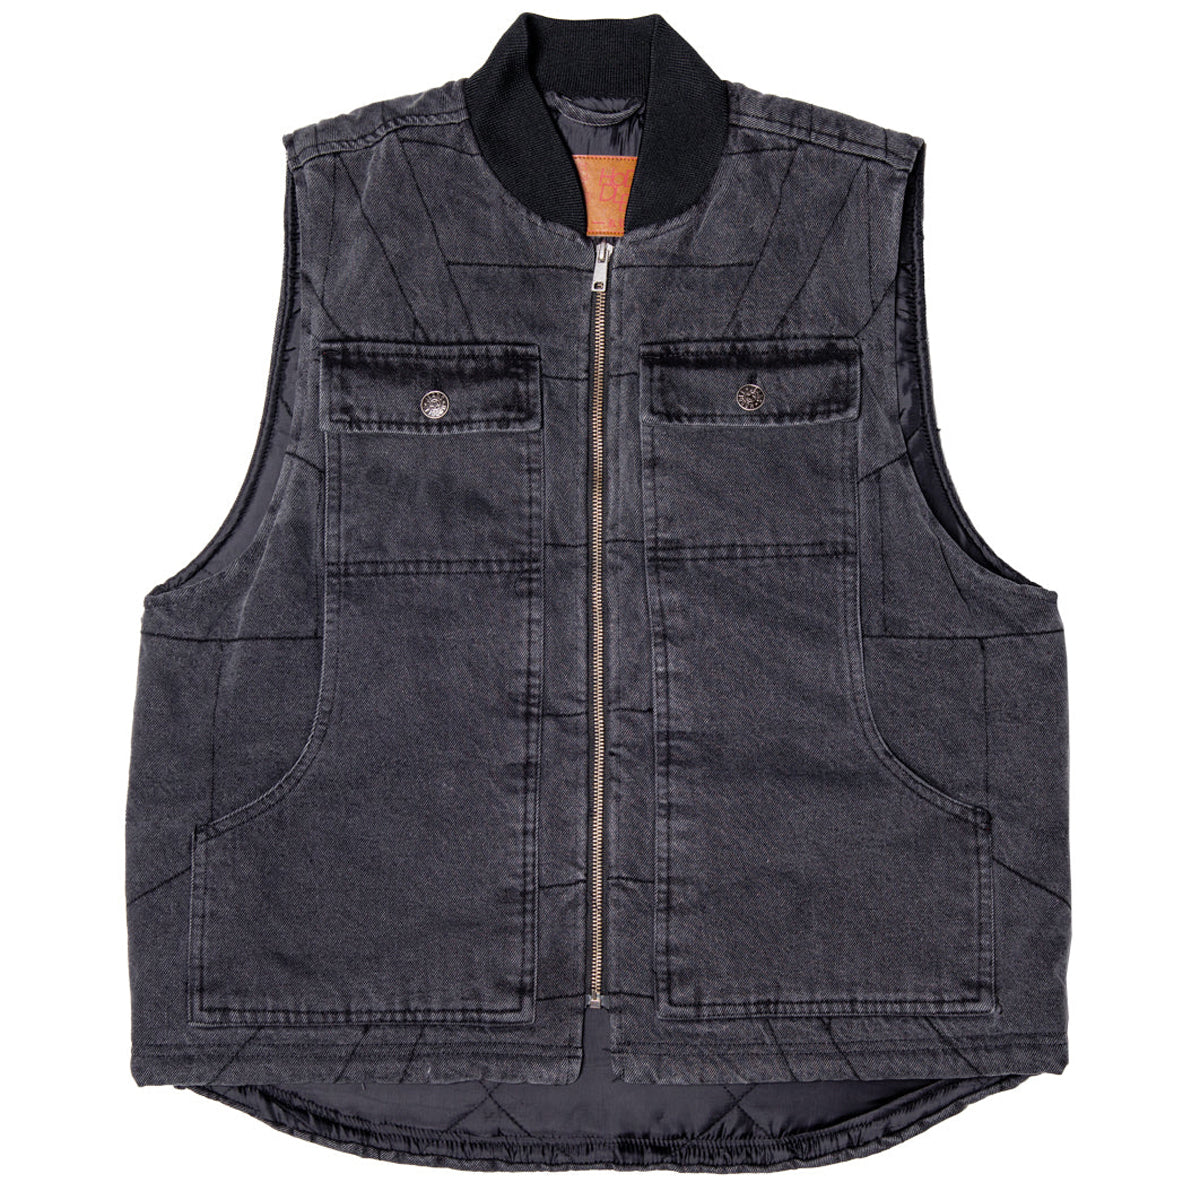 Hoddle Zip Up Carpenter Vest Jacket - Black Denim Wash image 1